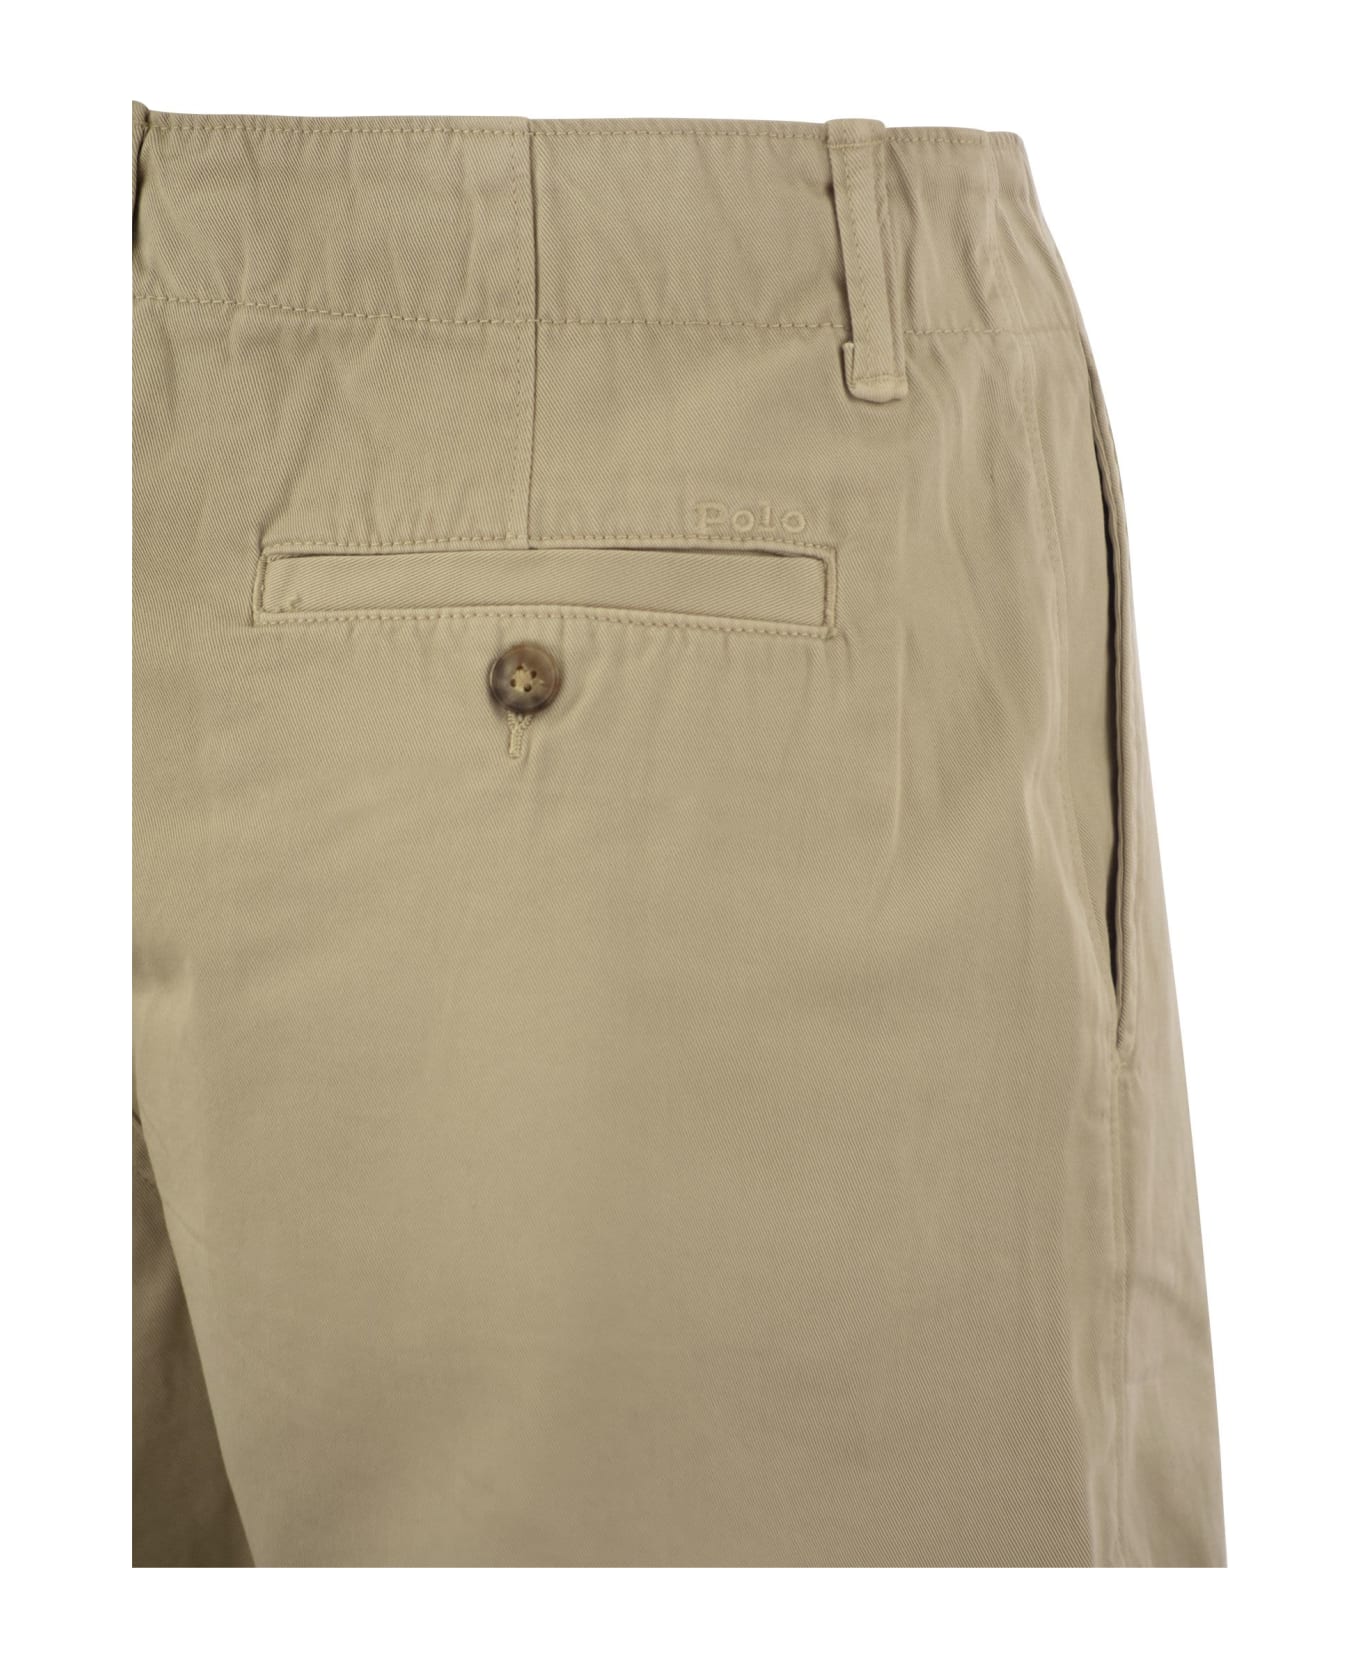 Polo Ralph Lauren Beige Cotton Shorts - KHAKI ショートパンツ